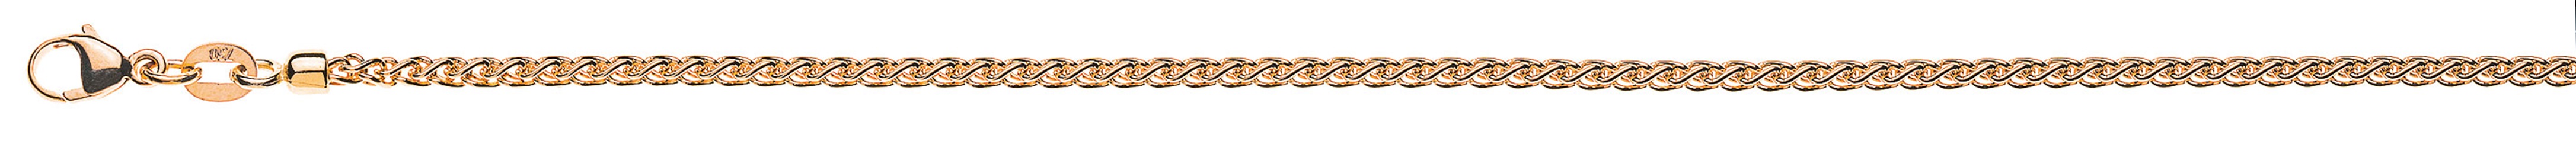 AURONOS Prestige Necklace rose gold 18K cable chain 60cm 2.15mm